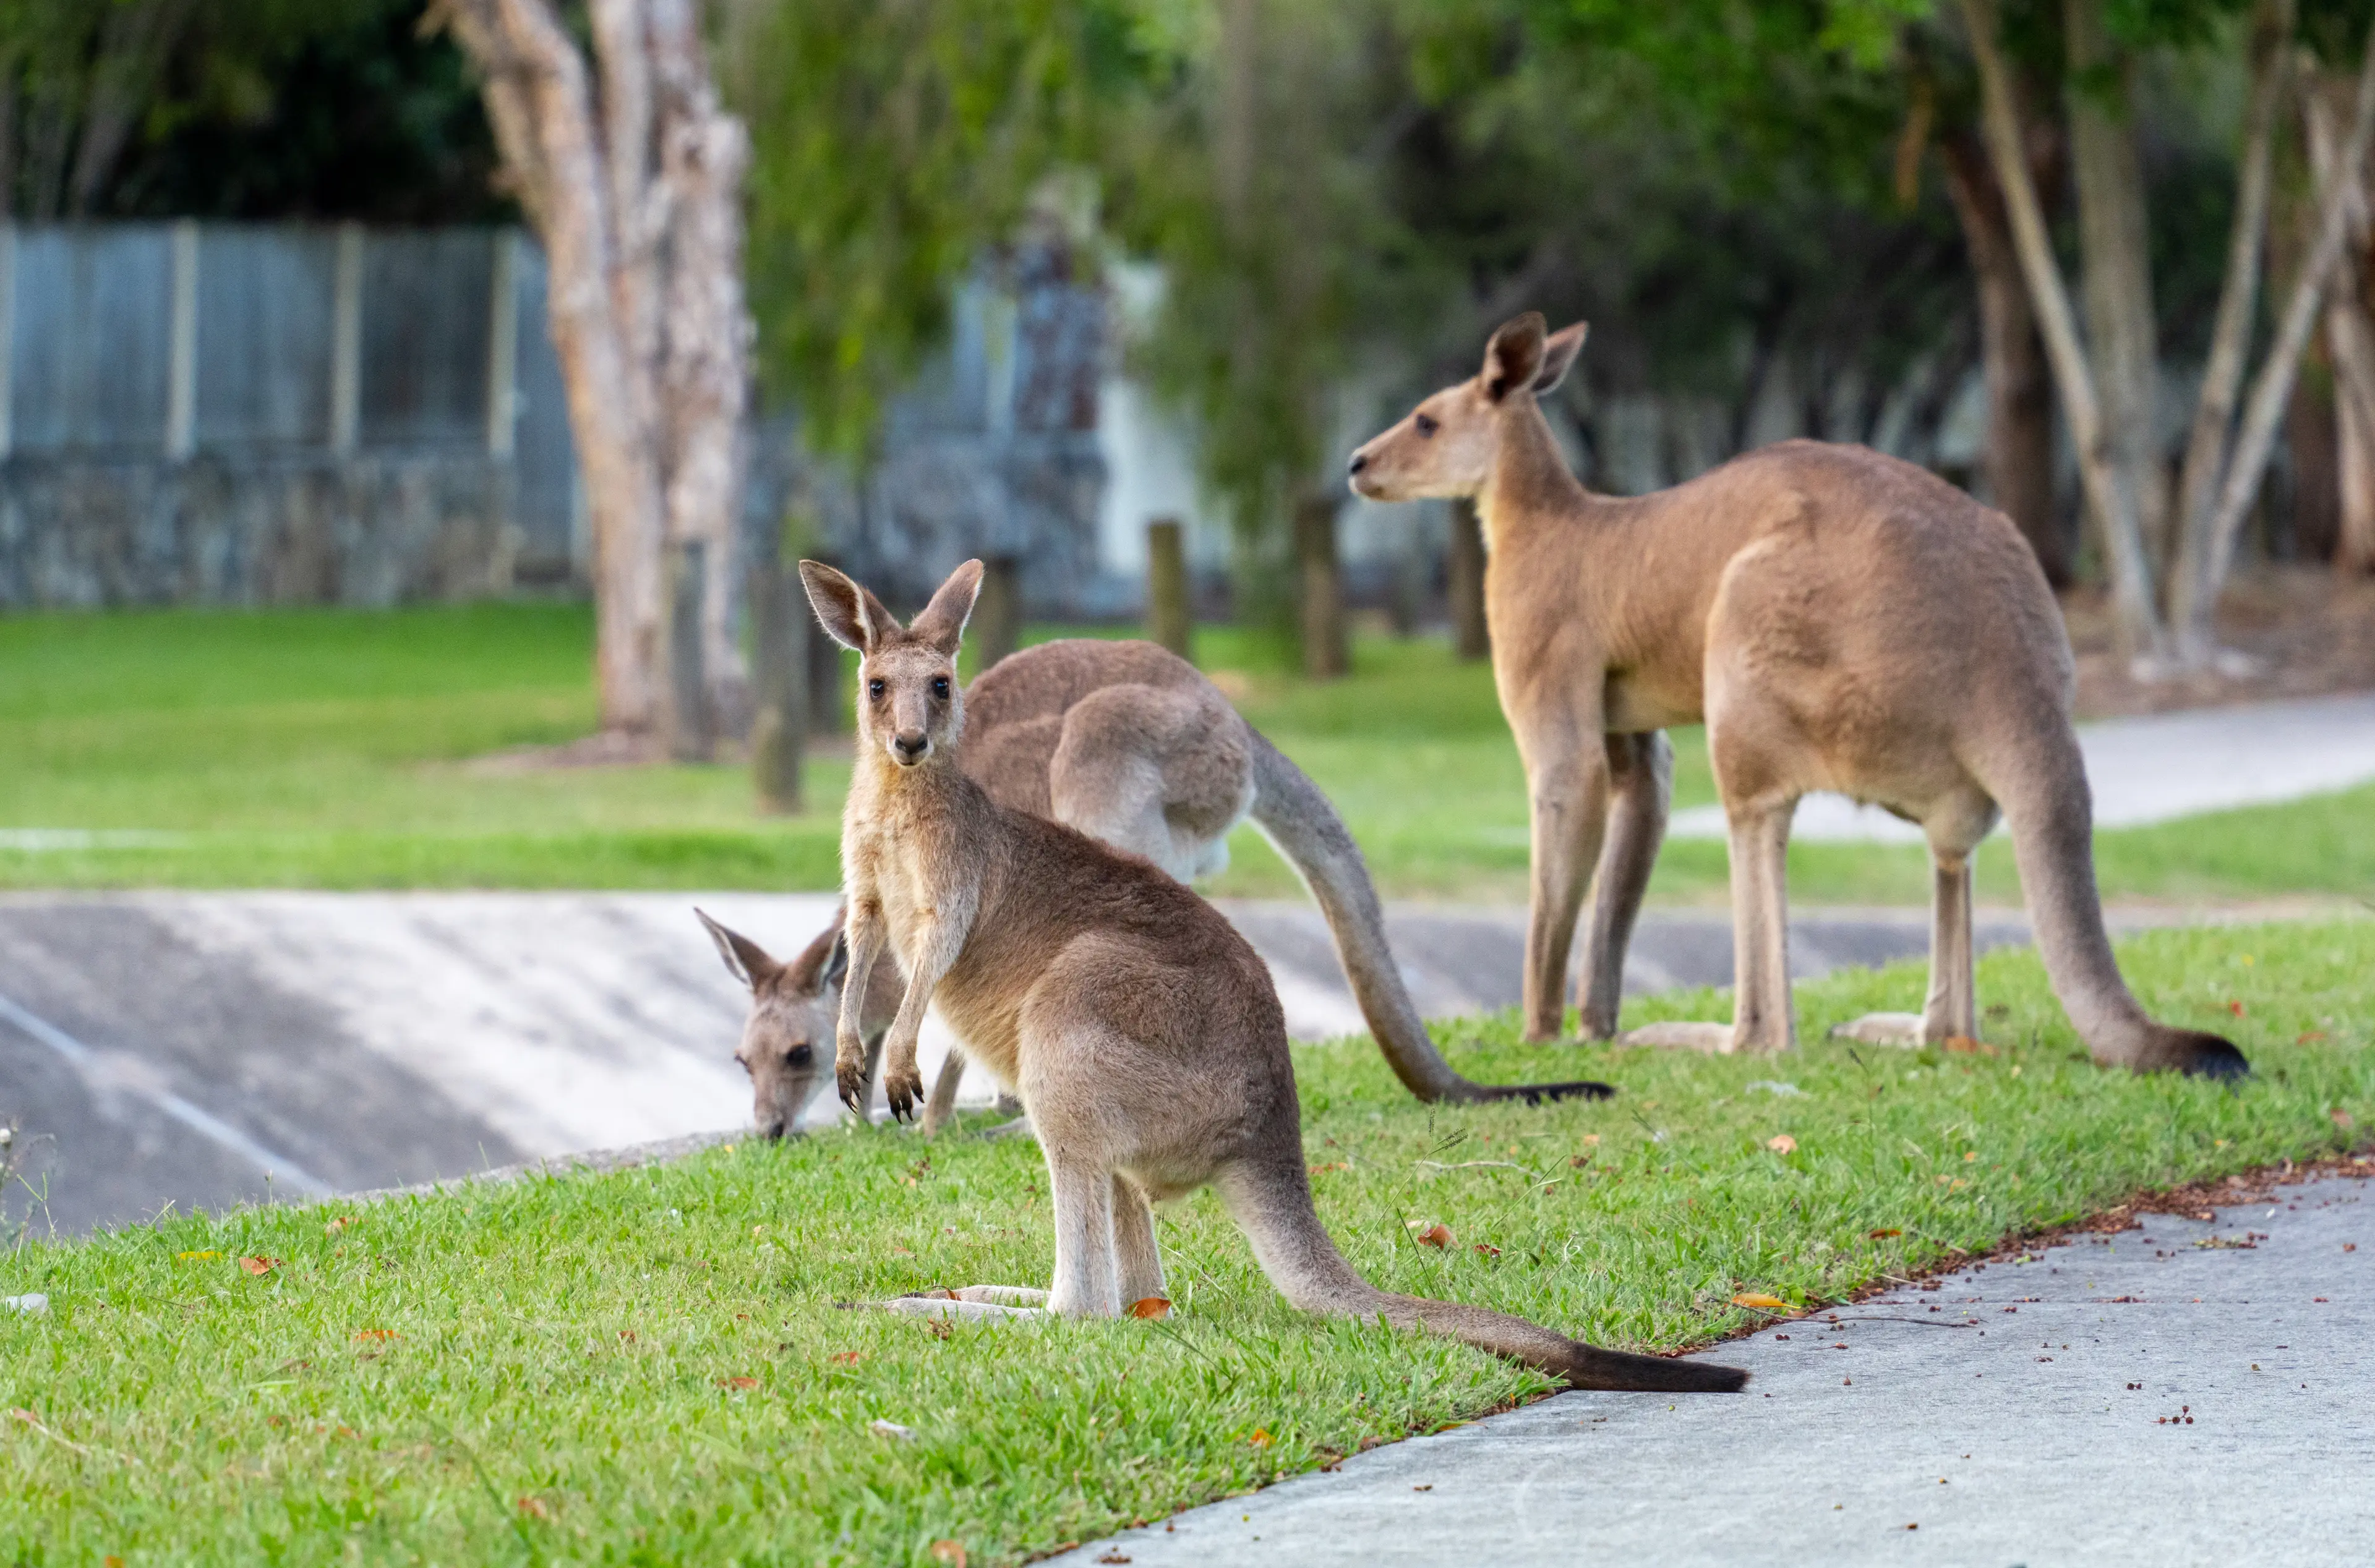 Kangaroo family on a residential street